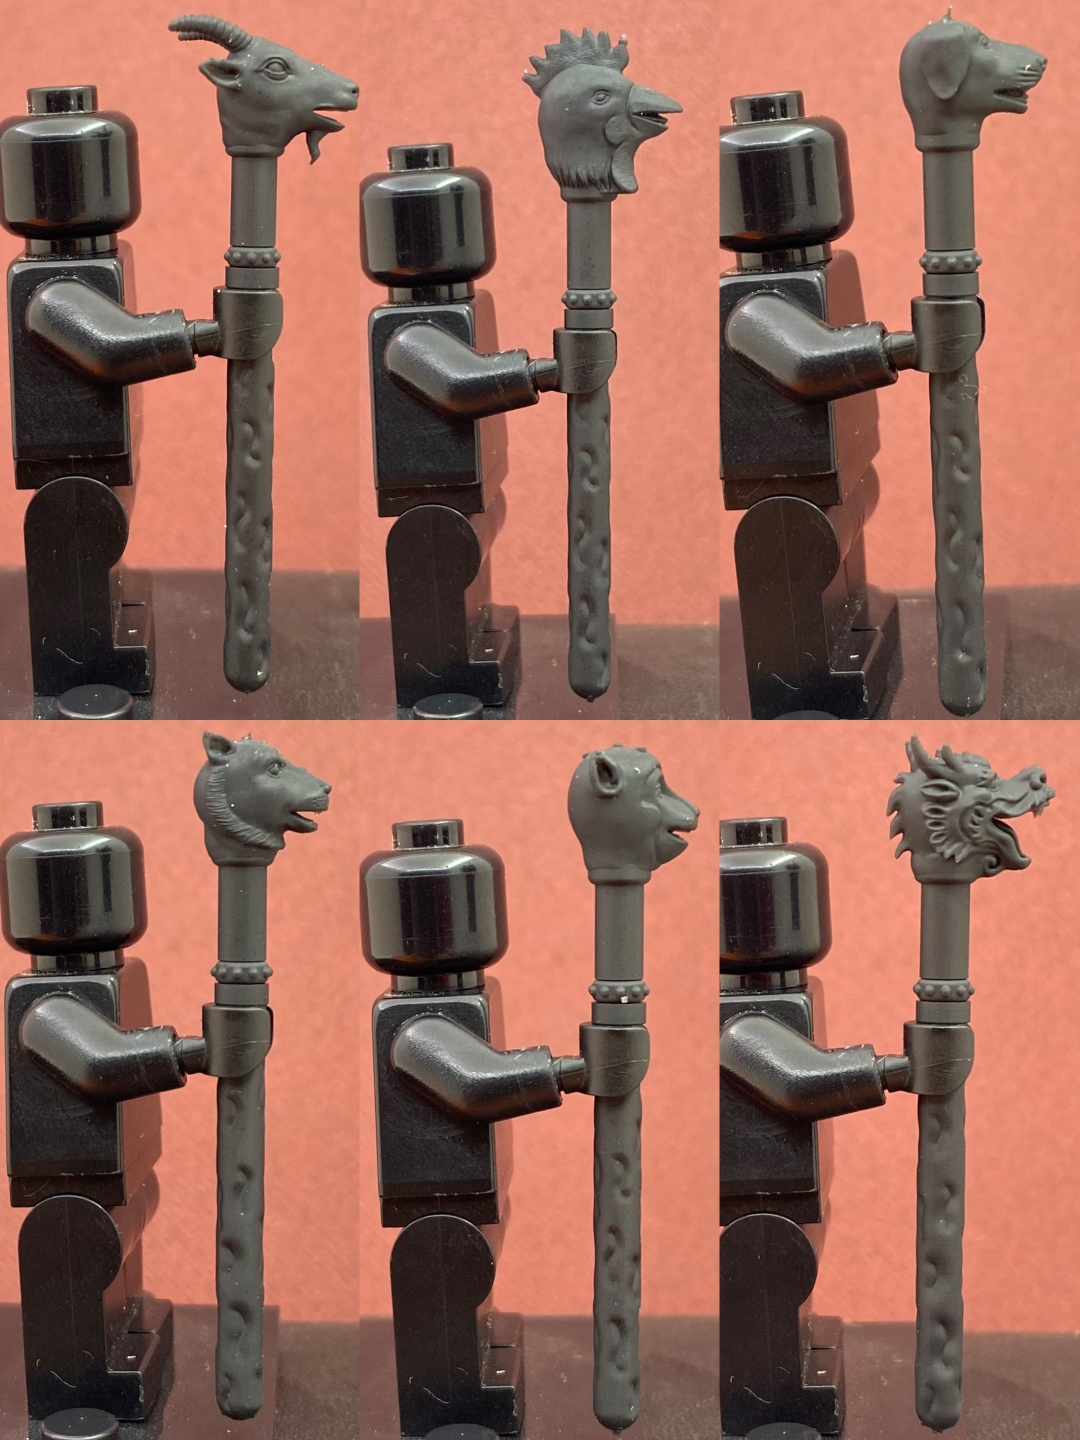 杖剑武器系列JOKER第三方3D打印积木人仔武器微缩模型手办摆件